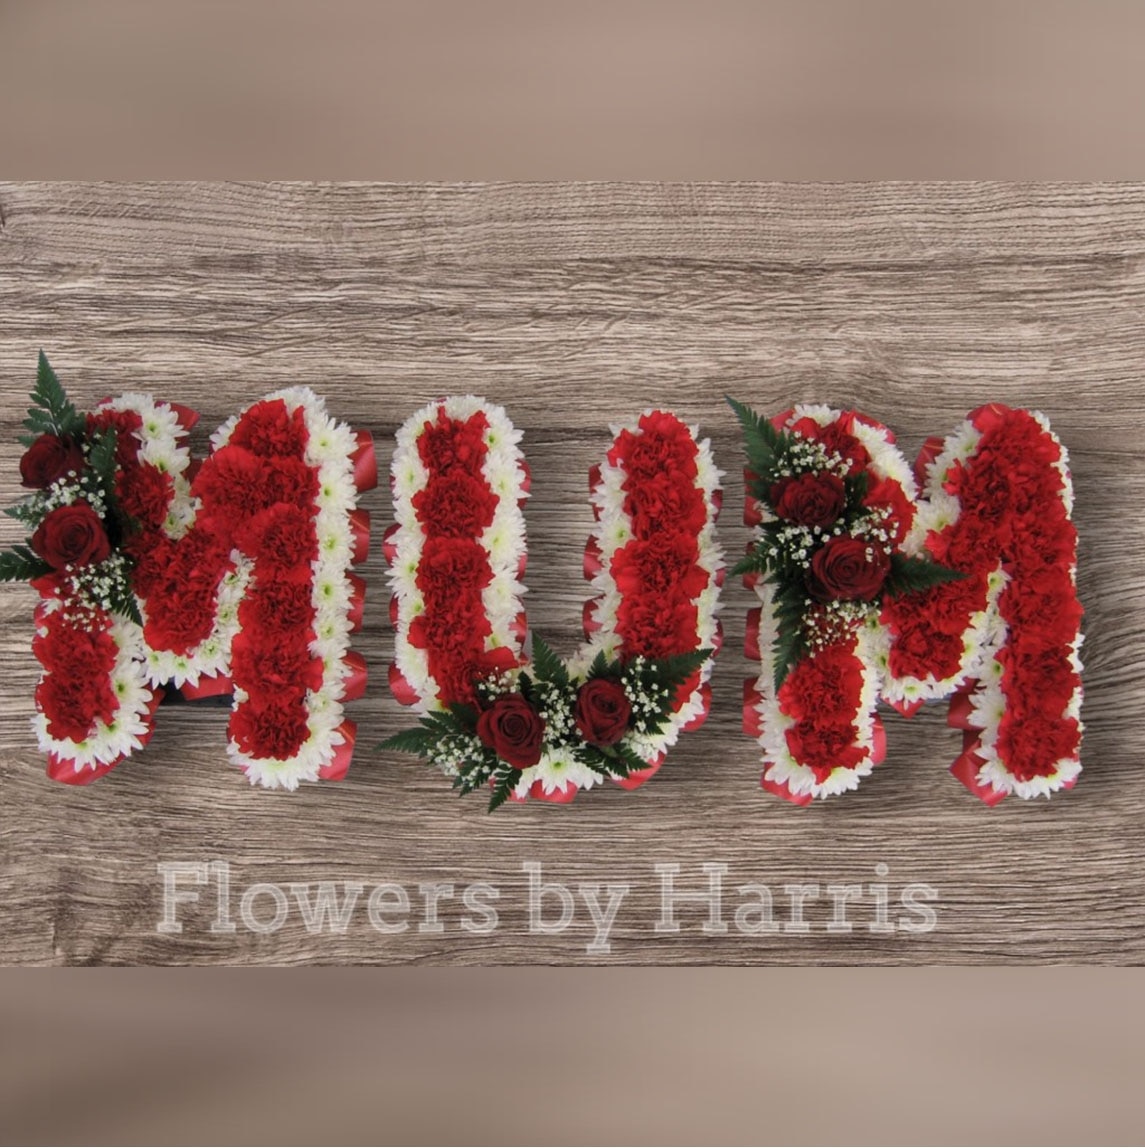 Mum Tribute in Red Flower Arrangement